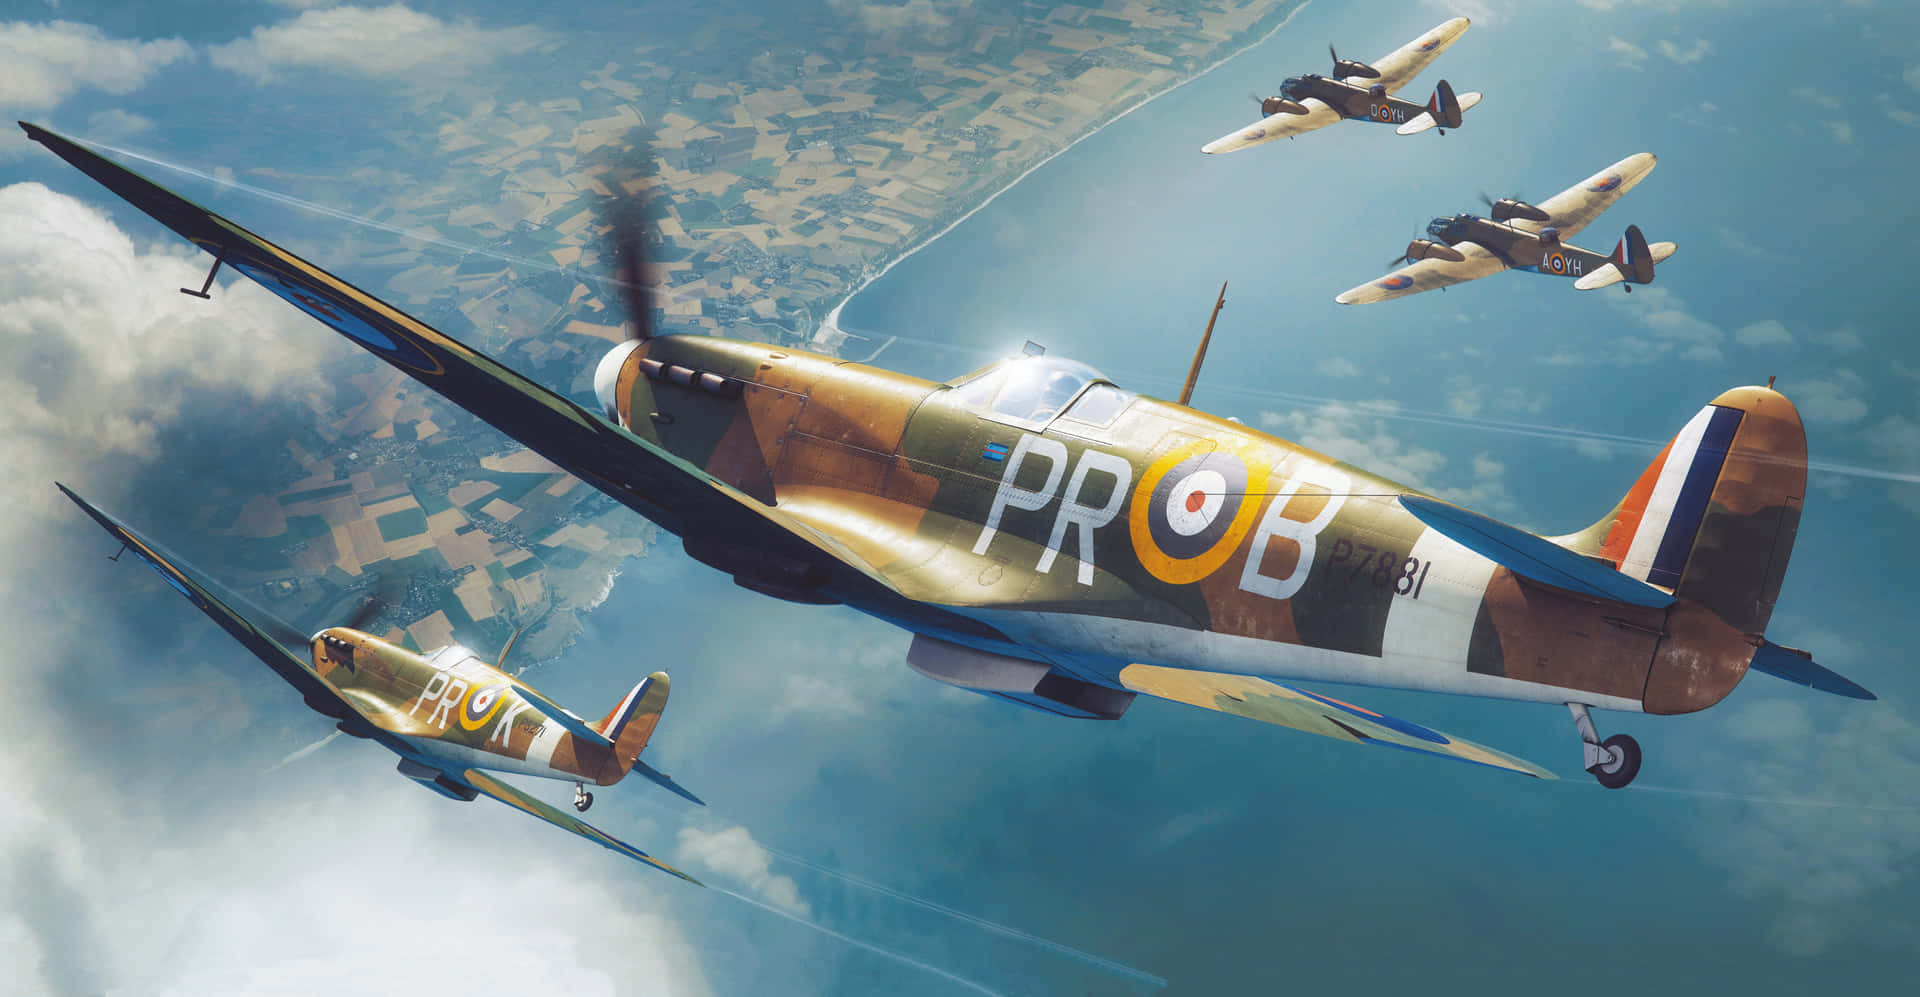 Spitfire 4437 X 2303 Wallpaper